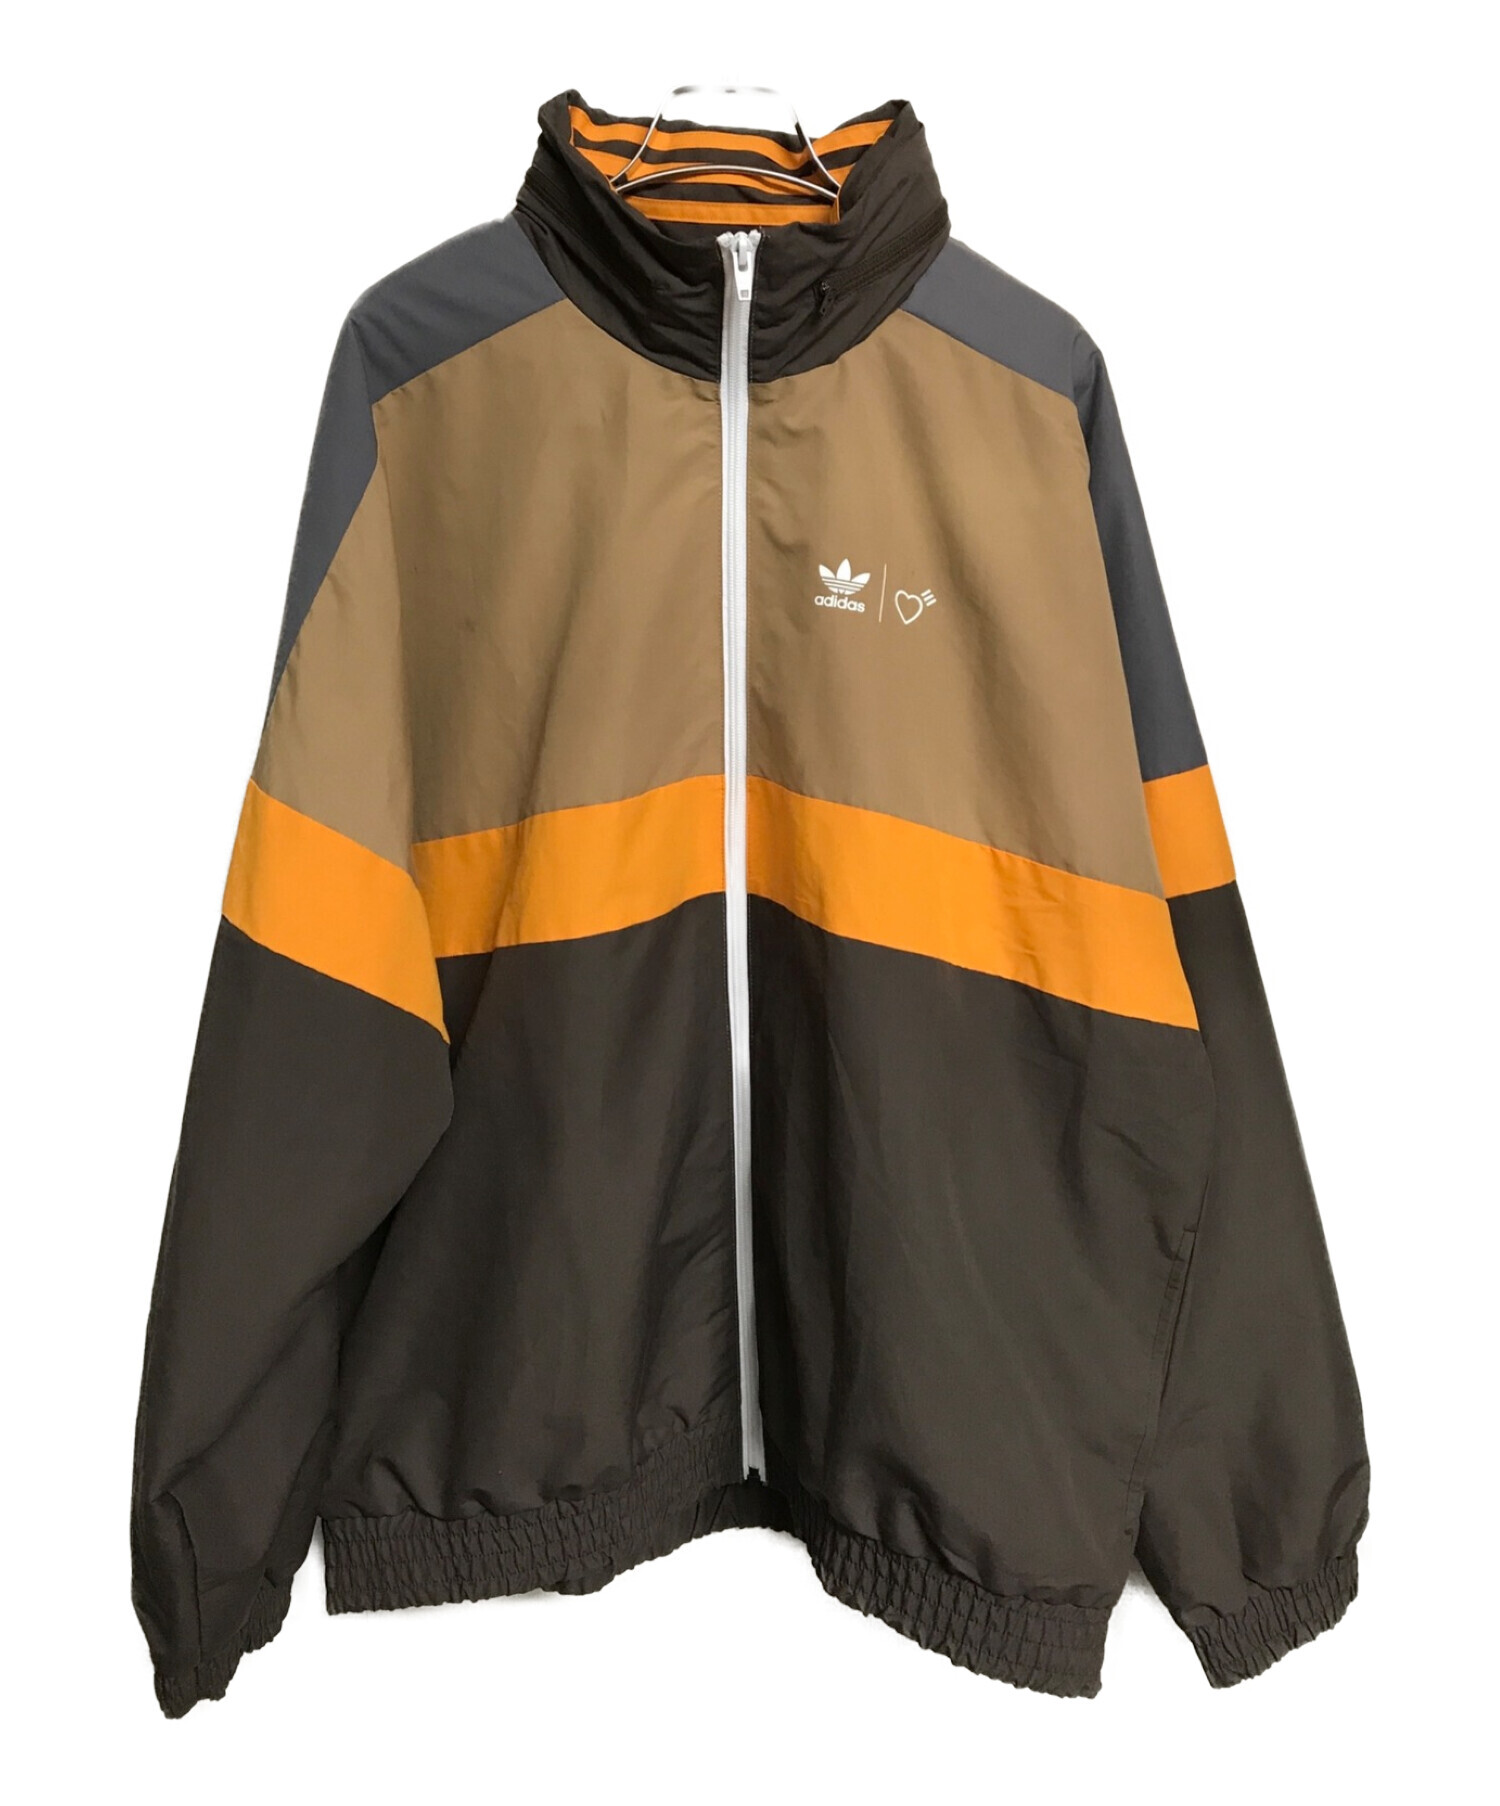 adidas×HUMAN MADE (アディダス×ヒューマンメイド) Windbreaker Jacket ブラウン×オレンジ サイズ:2XL